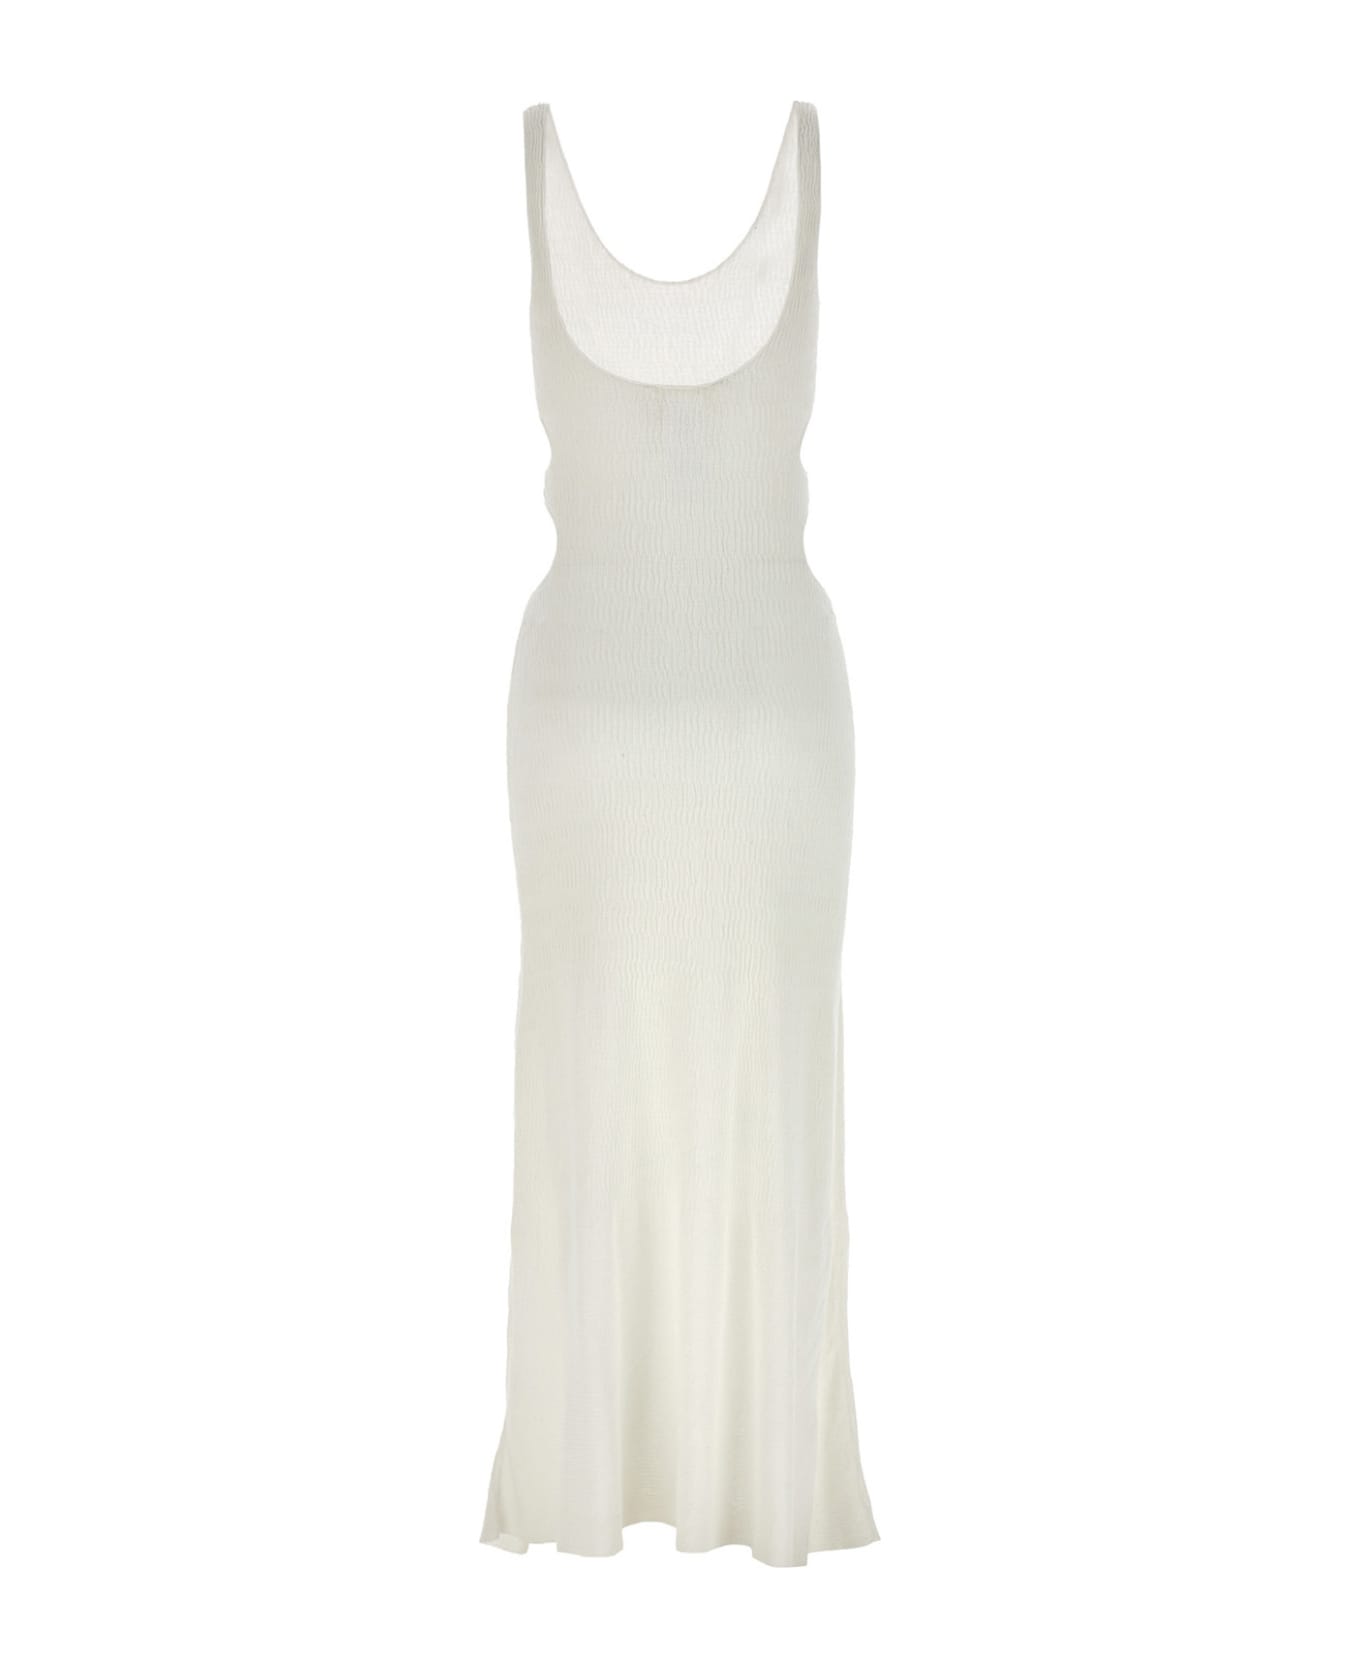 Chloé Cut-out Dress - White